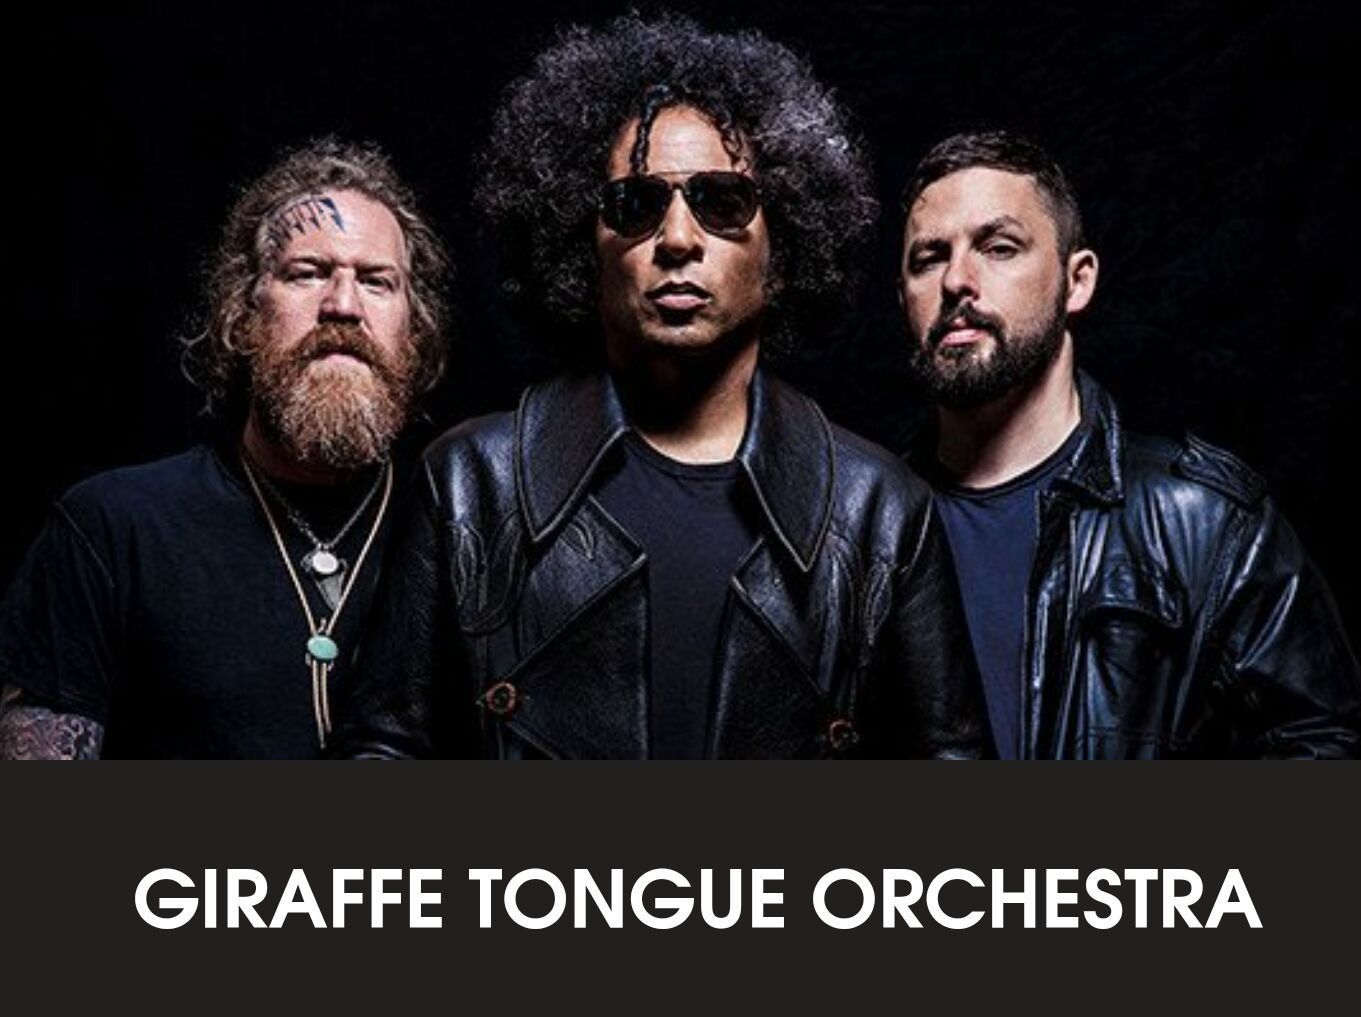 Giraffe Tongue Orchestra: Alice-In-Chains-Sänger William DuVall als Frontmann bestätigt